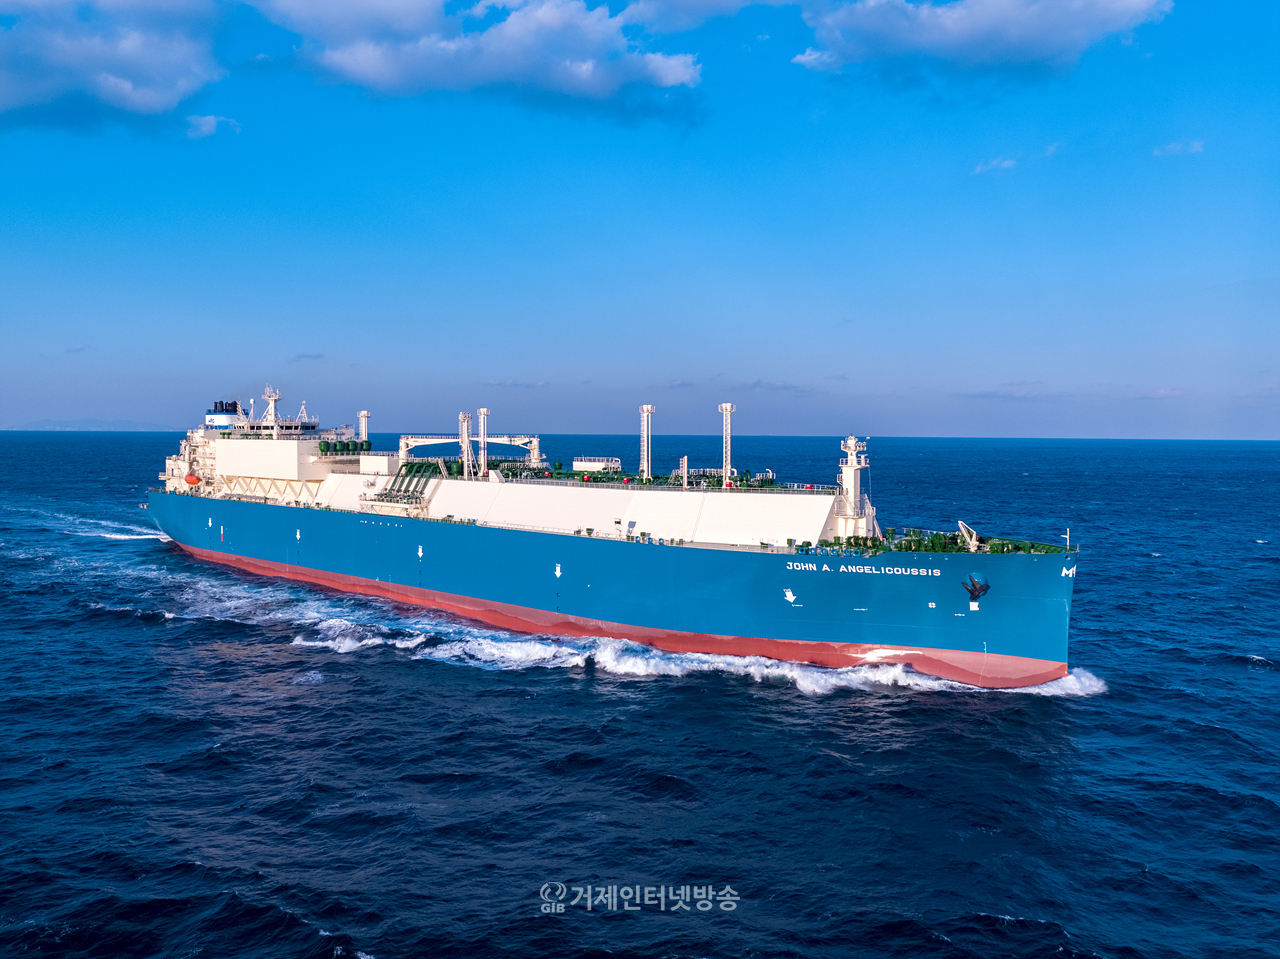 대우조선해양의 최신 기술인 축발전기와 공기윤활시스템이 적용된 LNG운반선의 항해 모습